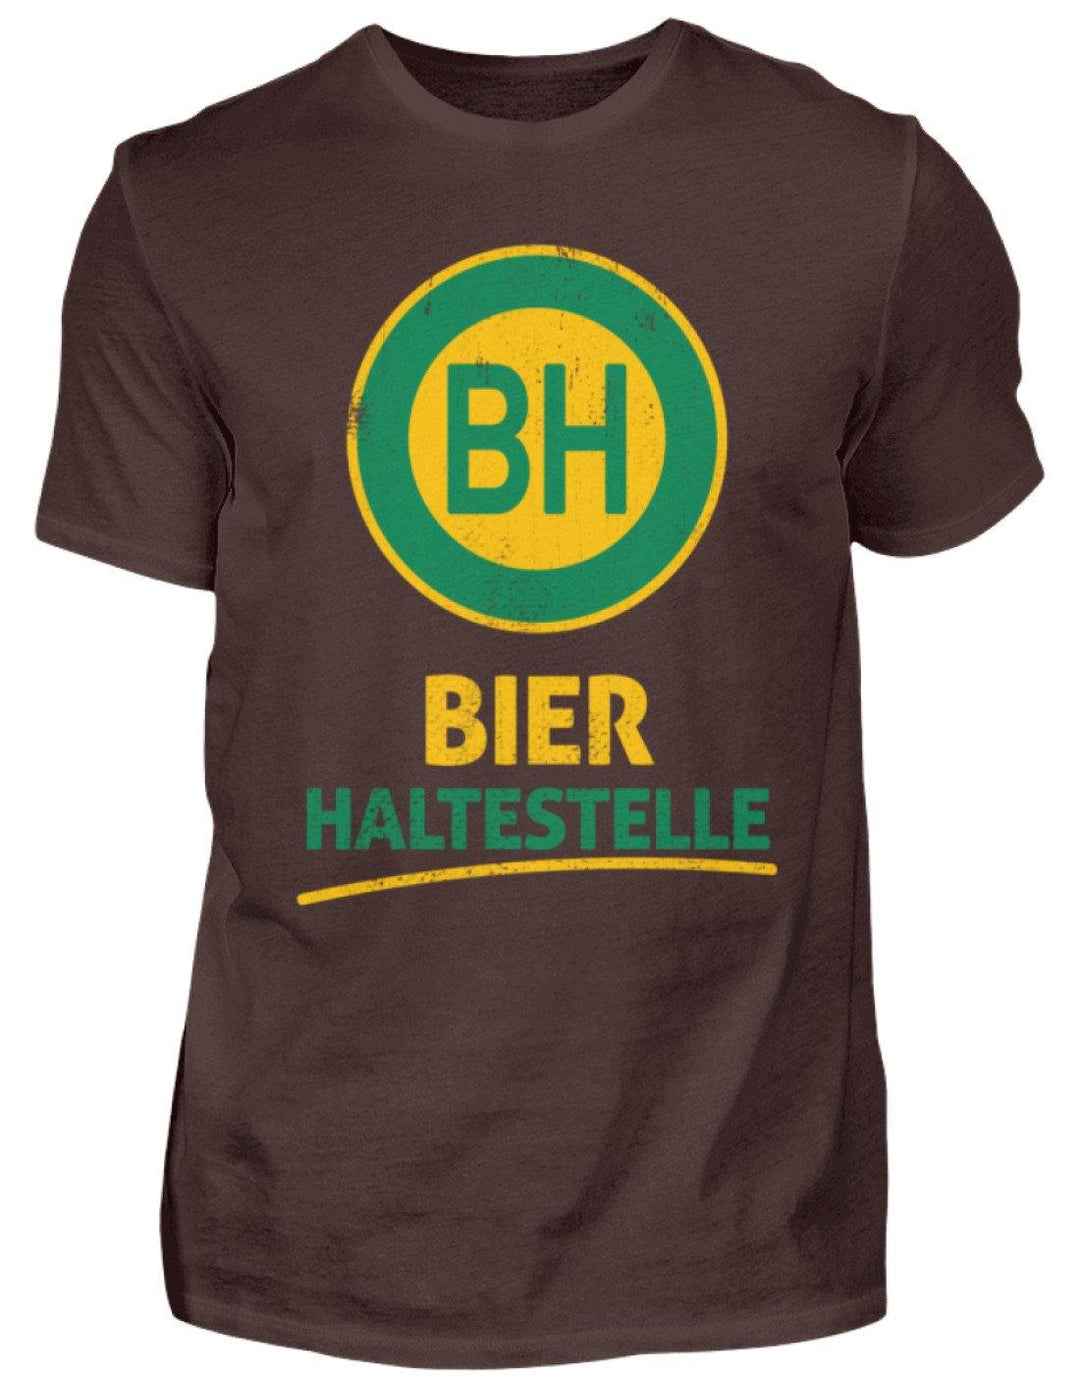 BH Bier Haltestelle - Words on Shirts  - Herren Shirt - Words on Shirts Sag es mit dem Mittelfinger Shirts Hoodies Sweatshirt Taschen Gymsack Spruch Sprüche Statement